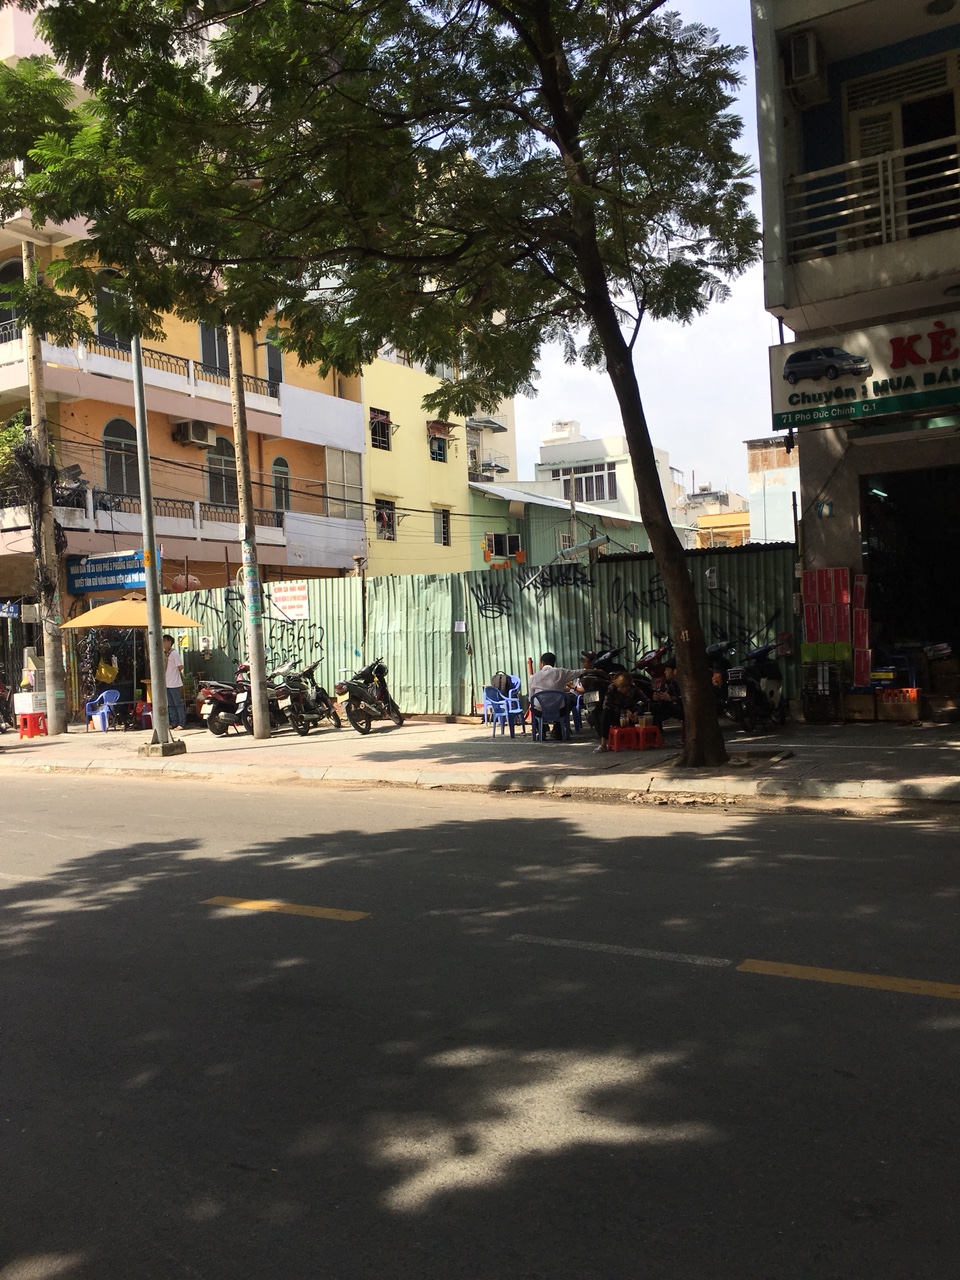 Cần bán nhà phố góc 2 mặt tiền Huỳnh Khương Ninh, q. 1, DT: 82m2, 5 tầng mới đẹp, giá 15 tỷ (TL).  